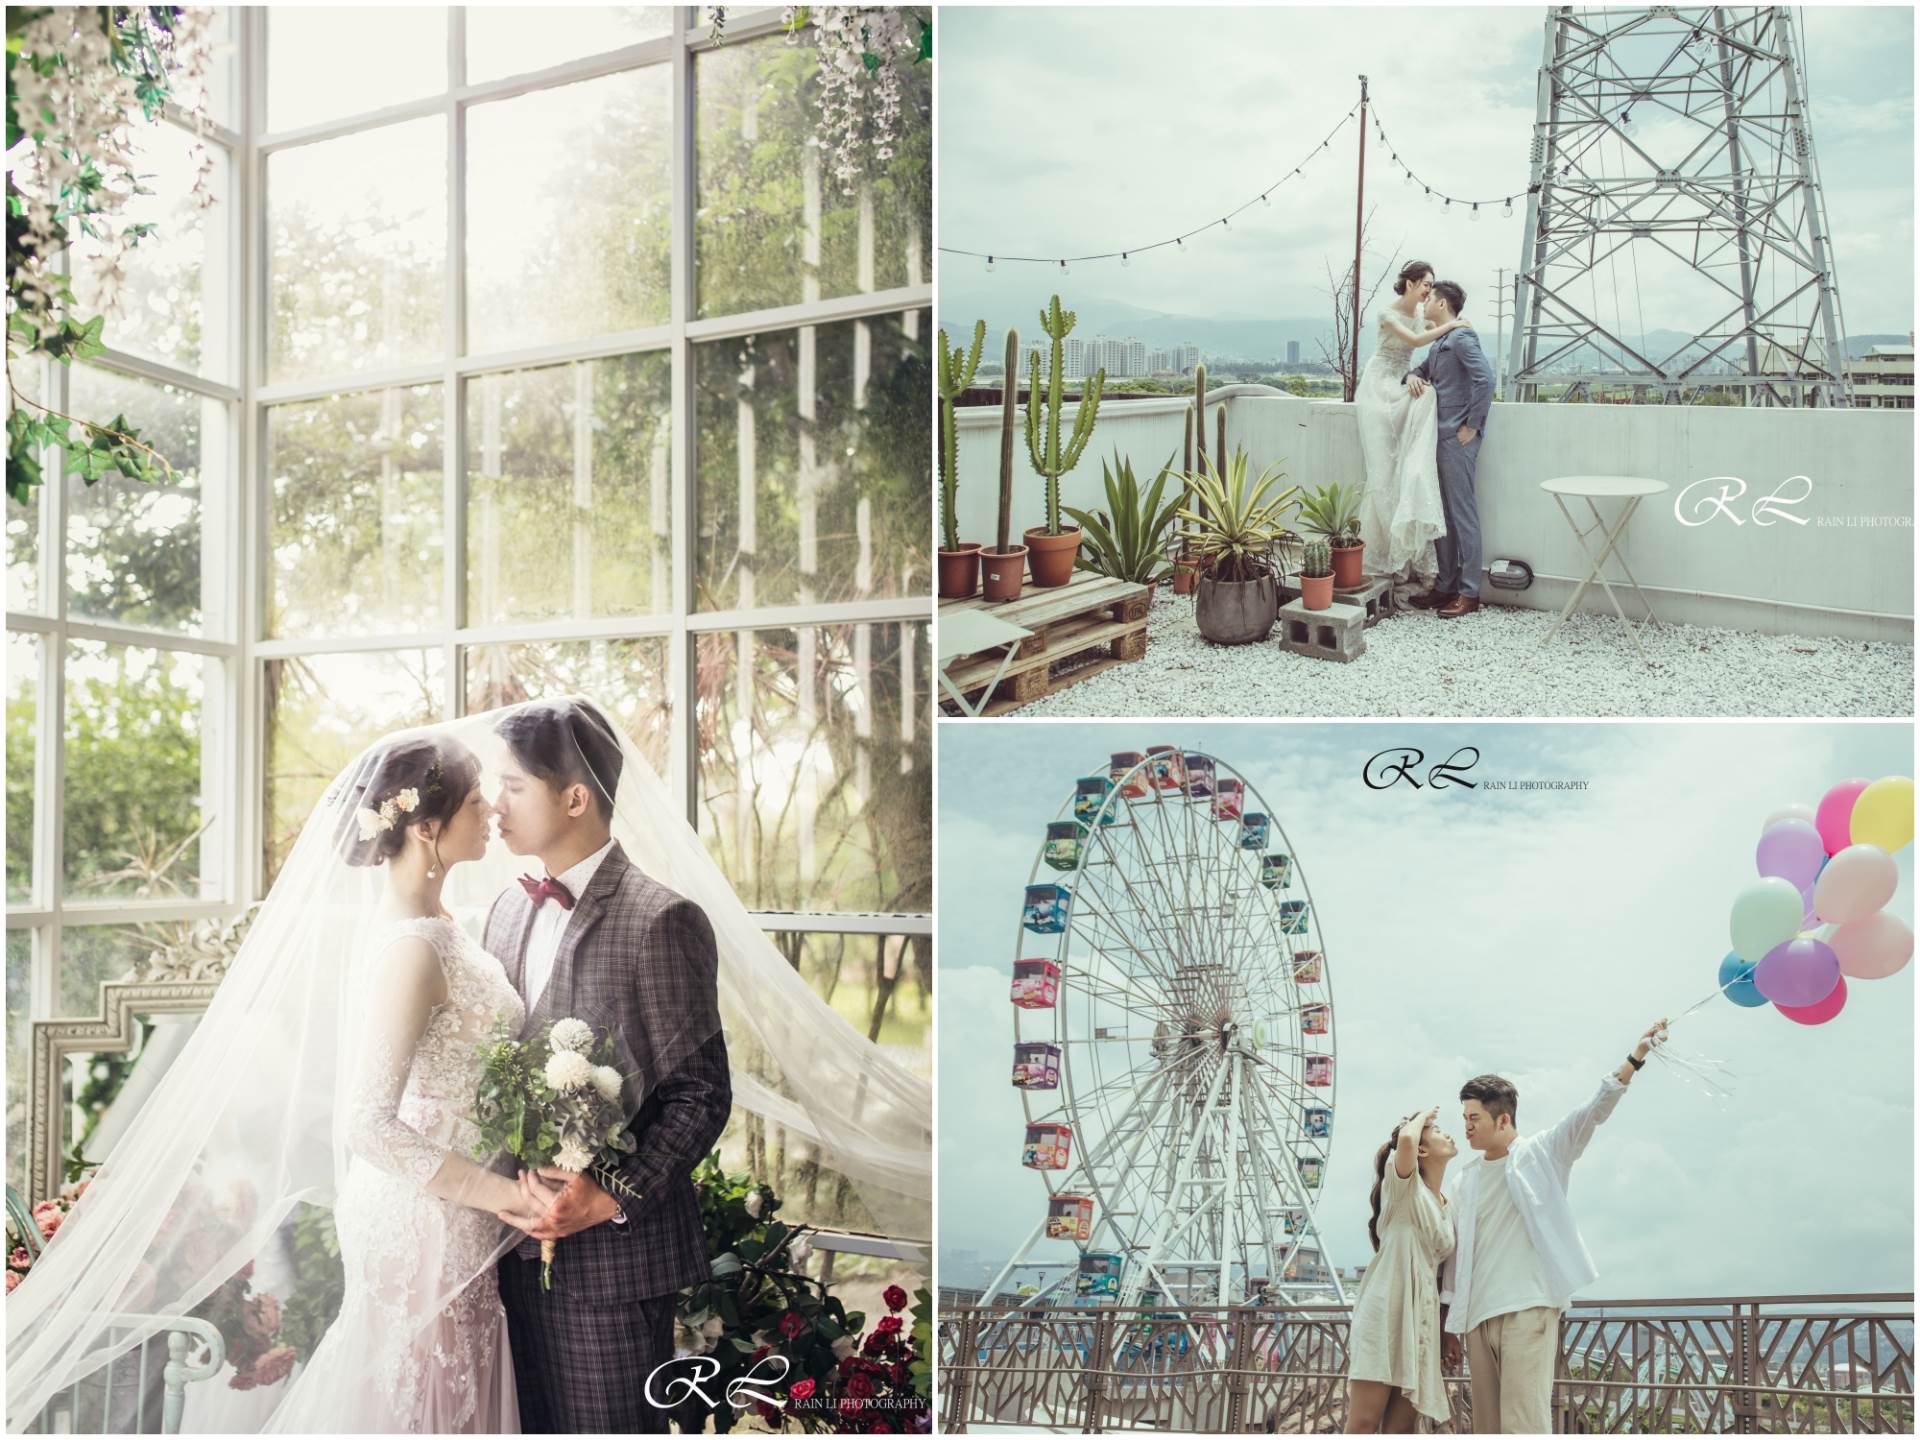 婚紗攝影,台北婚紗攝影,婚紗攝影推薦,婚紗攝影師